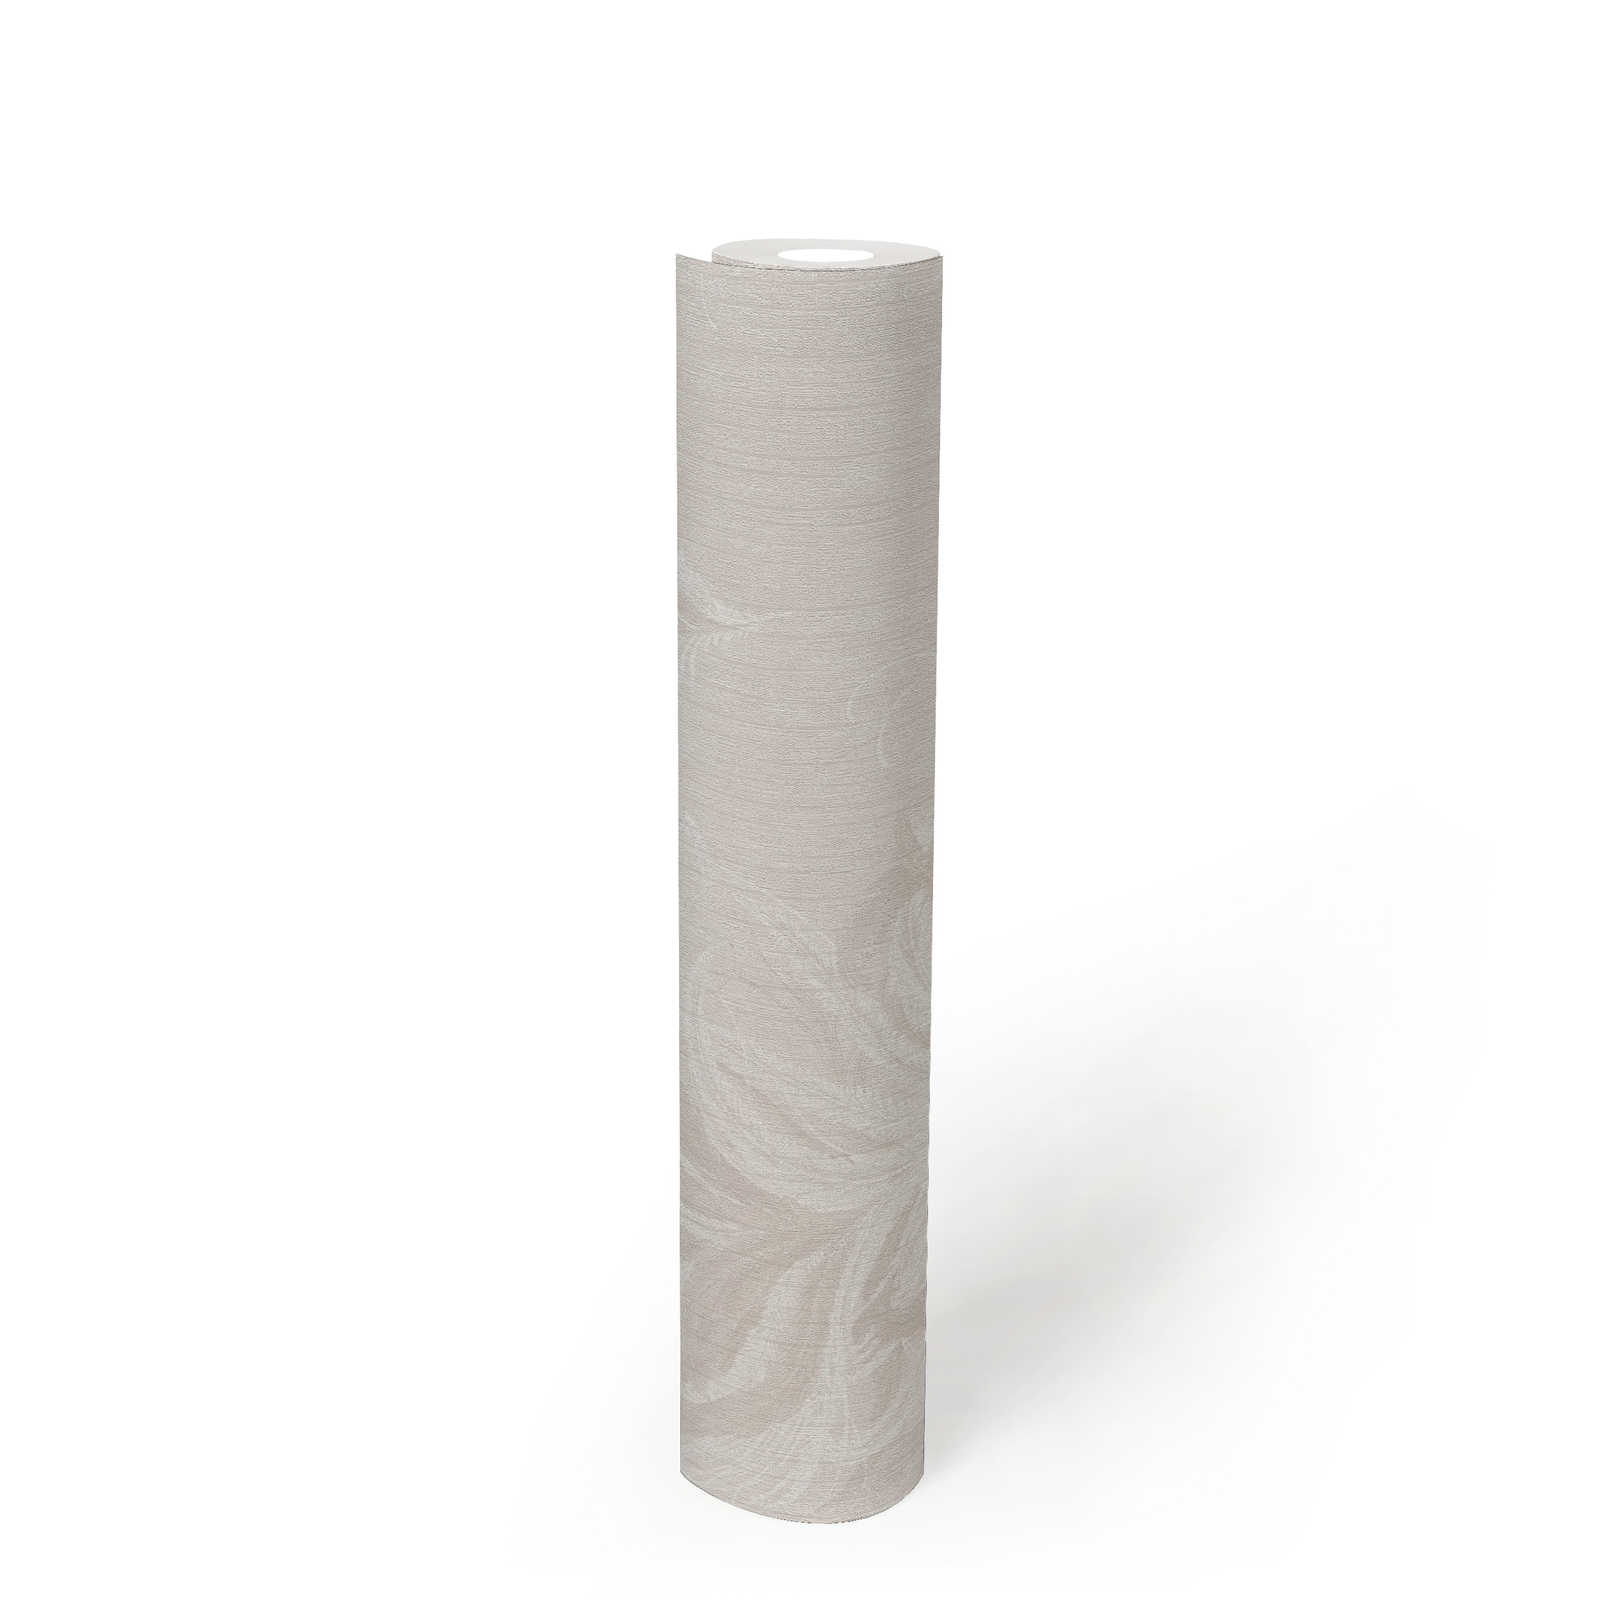             Vliestapete mit Federn Design & Struktur Glanzeffekt – Weiß, Grau
        